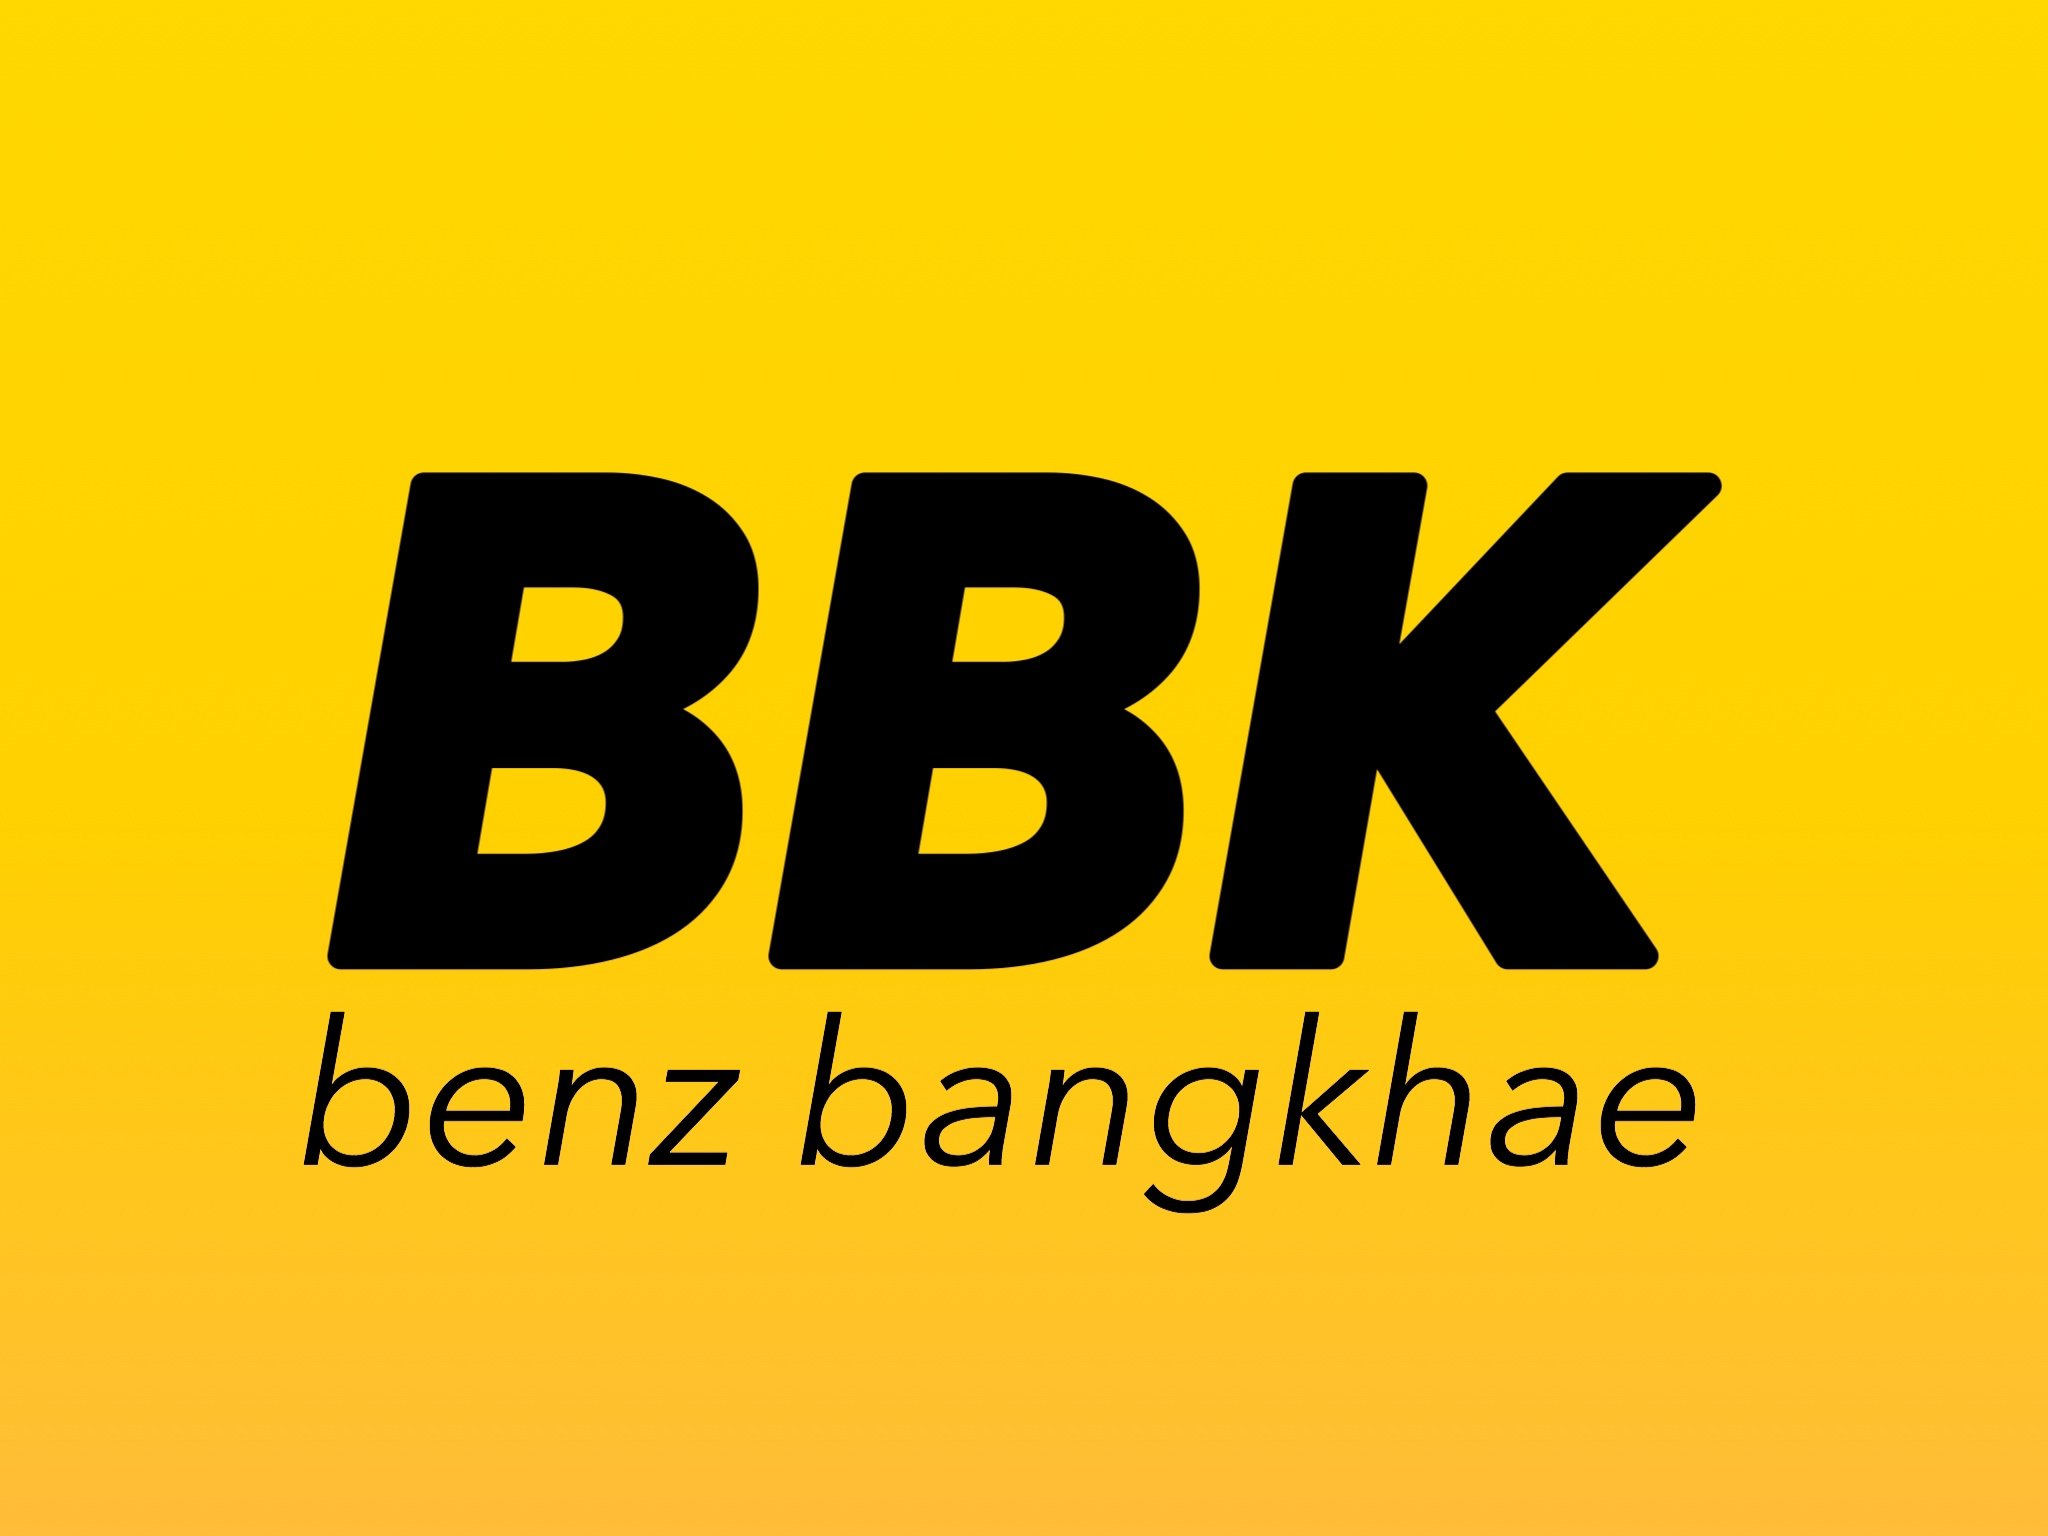 BBK benz bangkhae